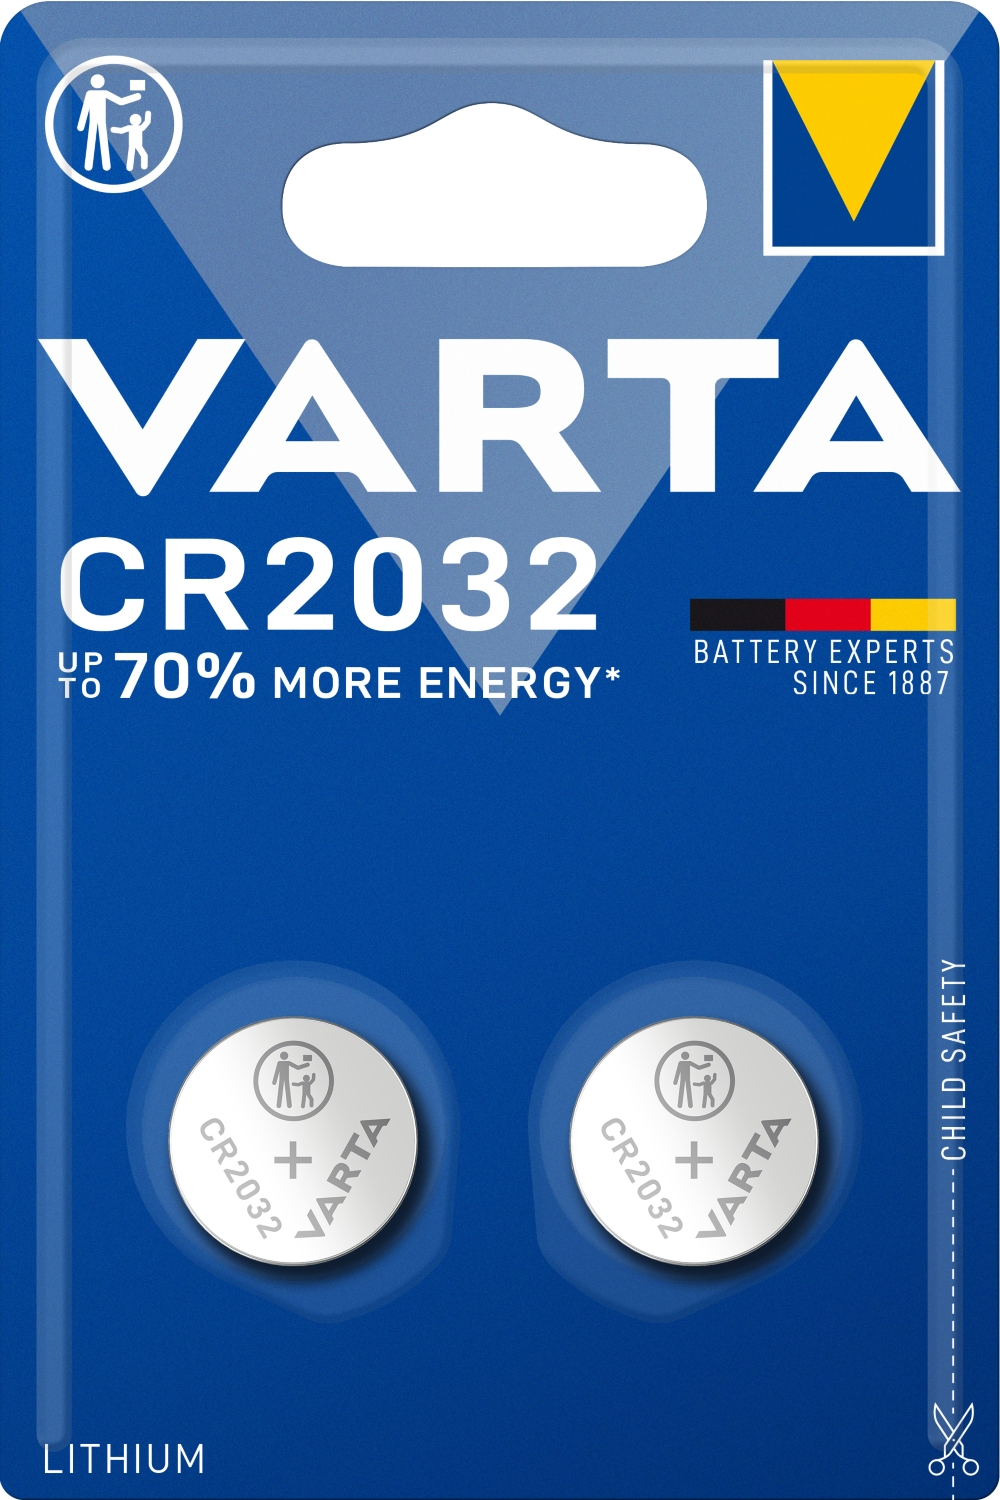 Piles électroniques lithium CR2032 x2 Varta